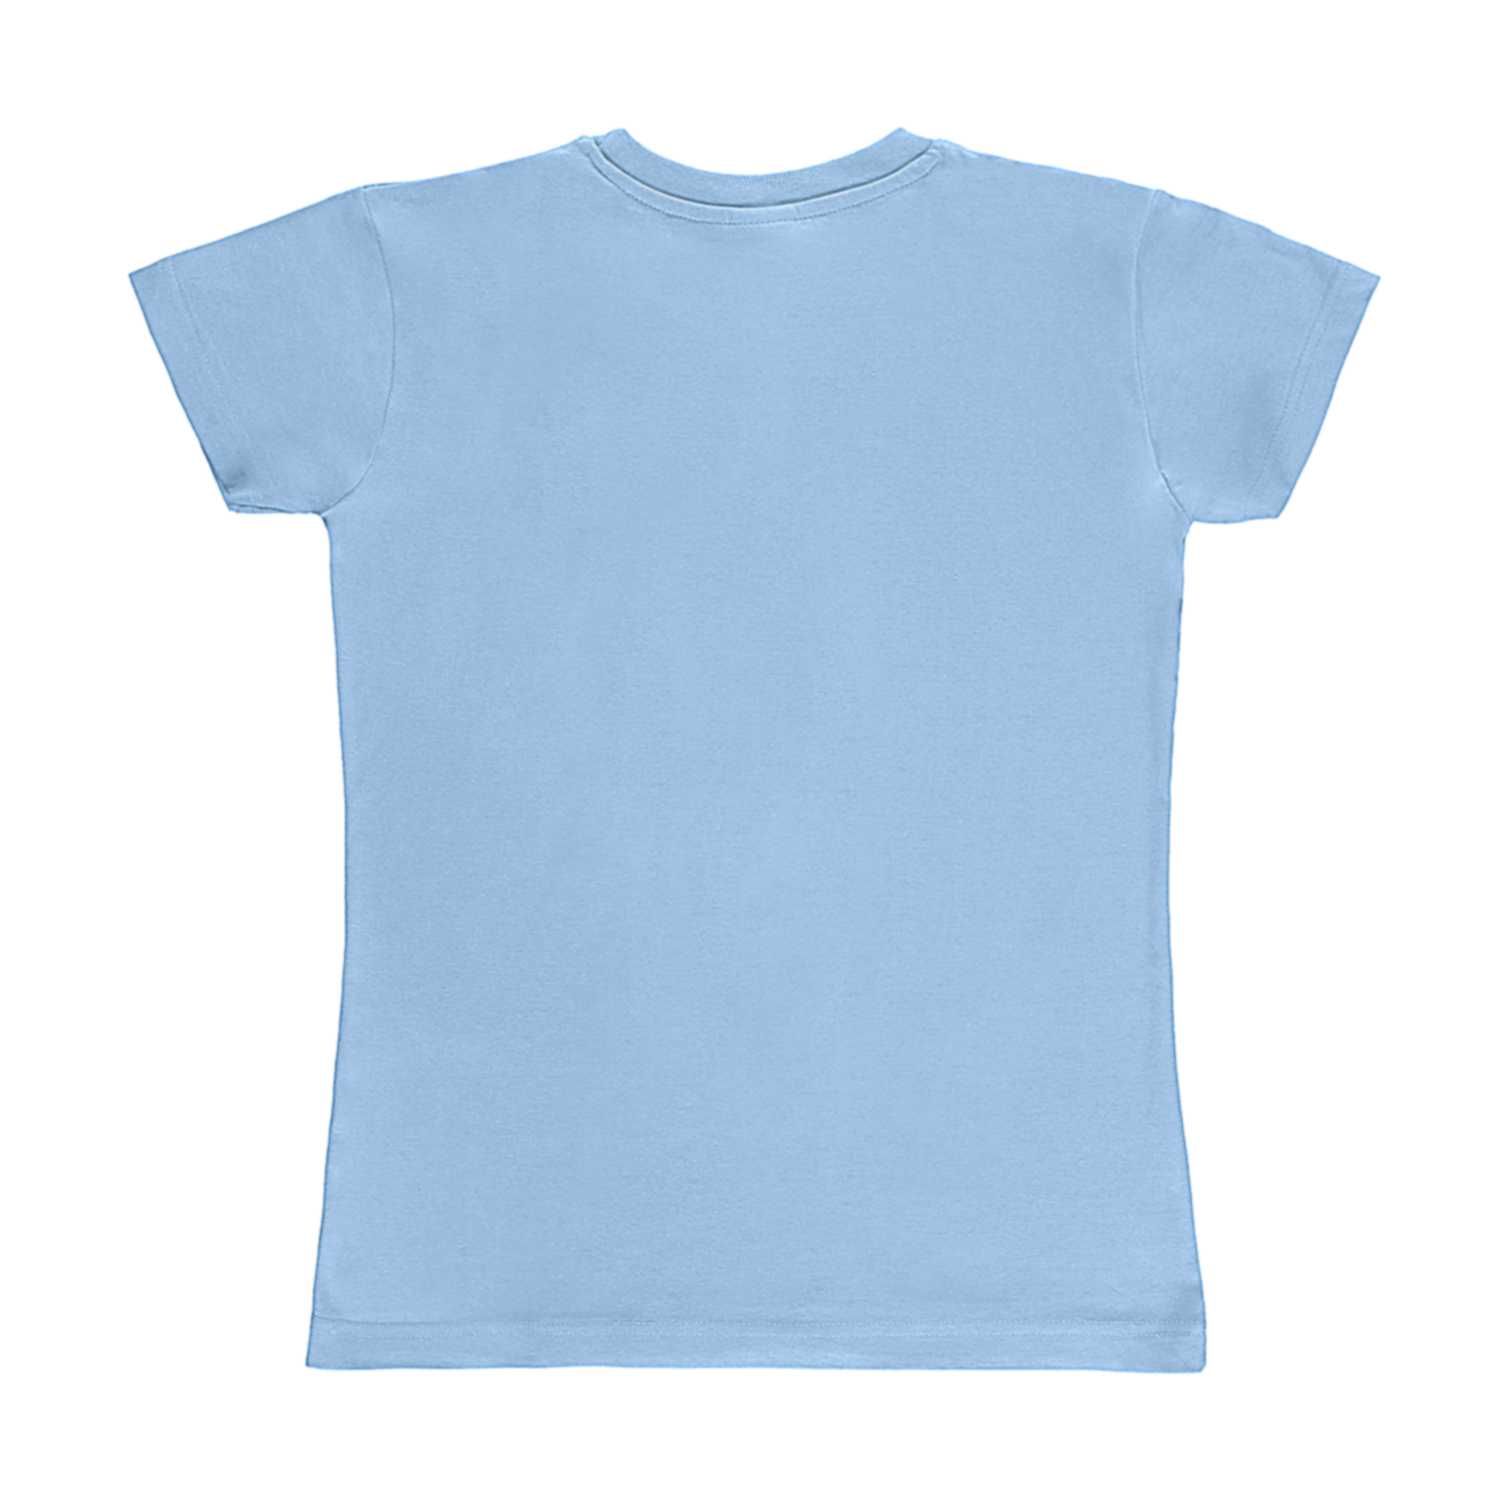 Koszulka damska SG15F błękitna S